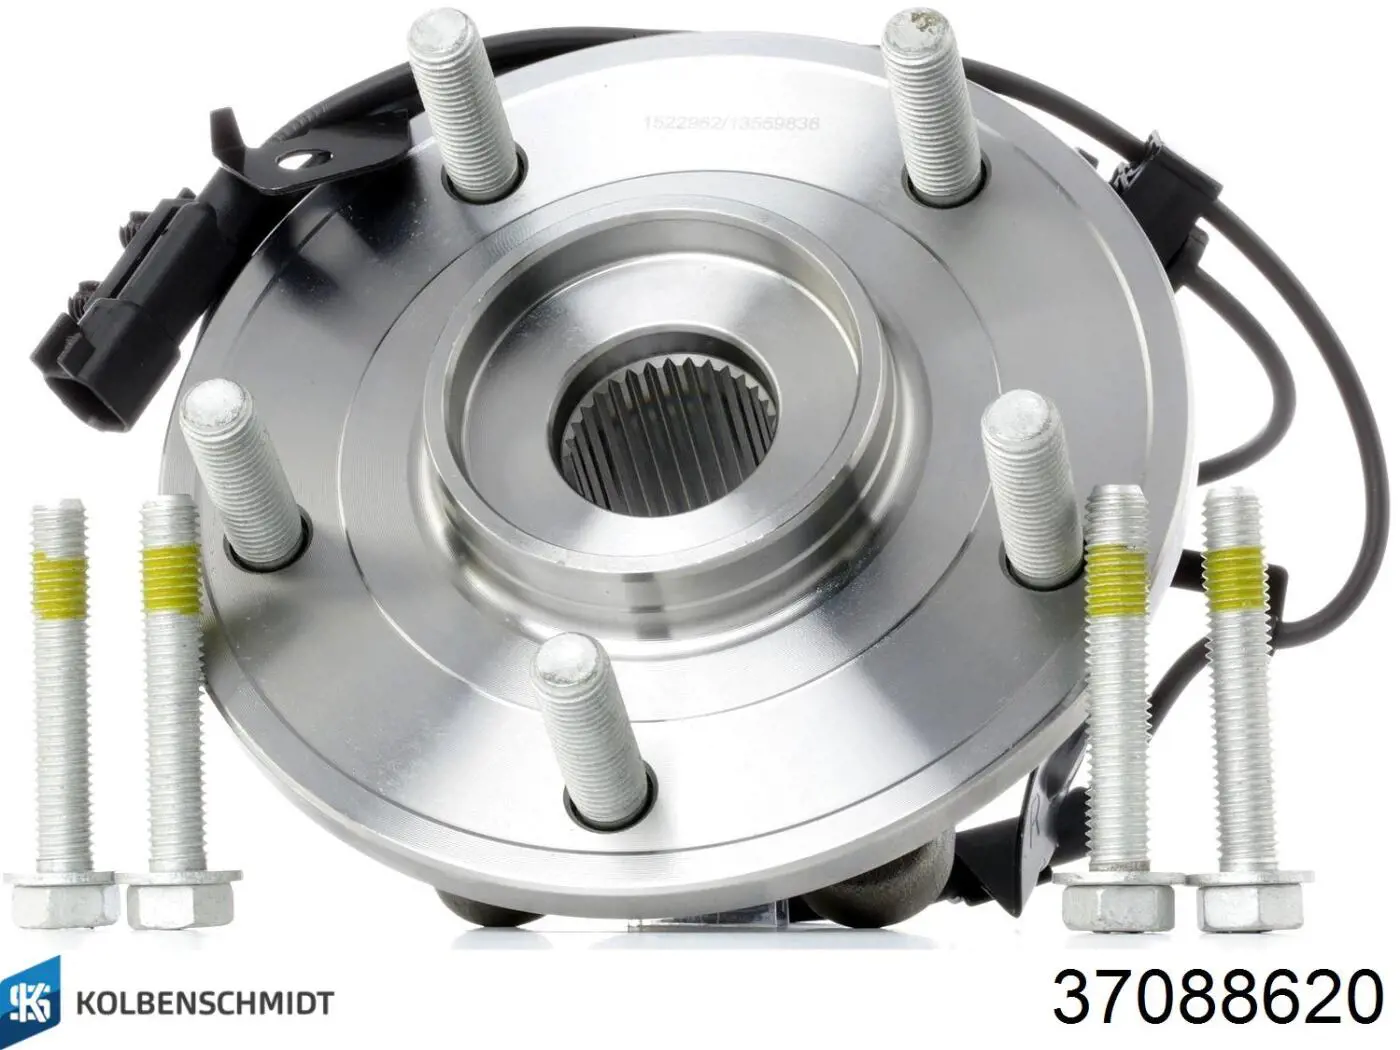 H10955050 Glyco вкладыши коленвала коренные, комплект, 2-й ремонт (+0,50)